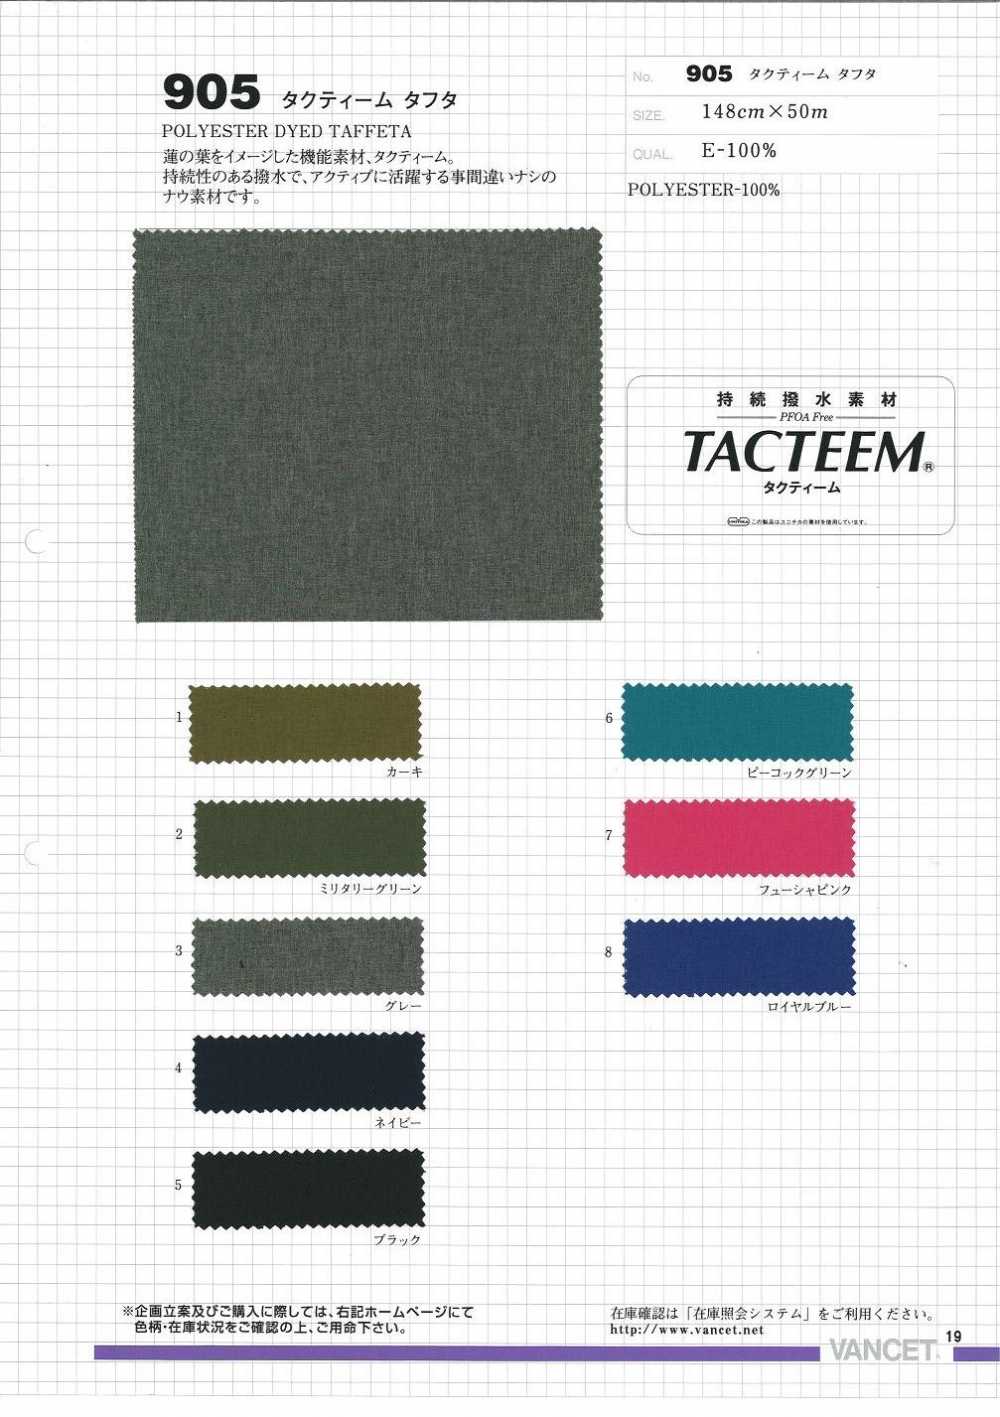 905 Tafetán Tactim[Fabrica Textil] VANCET